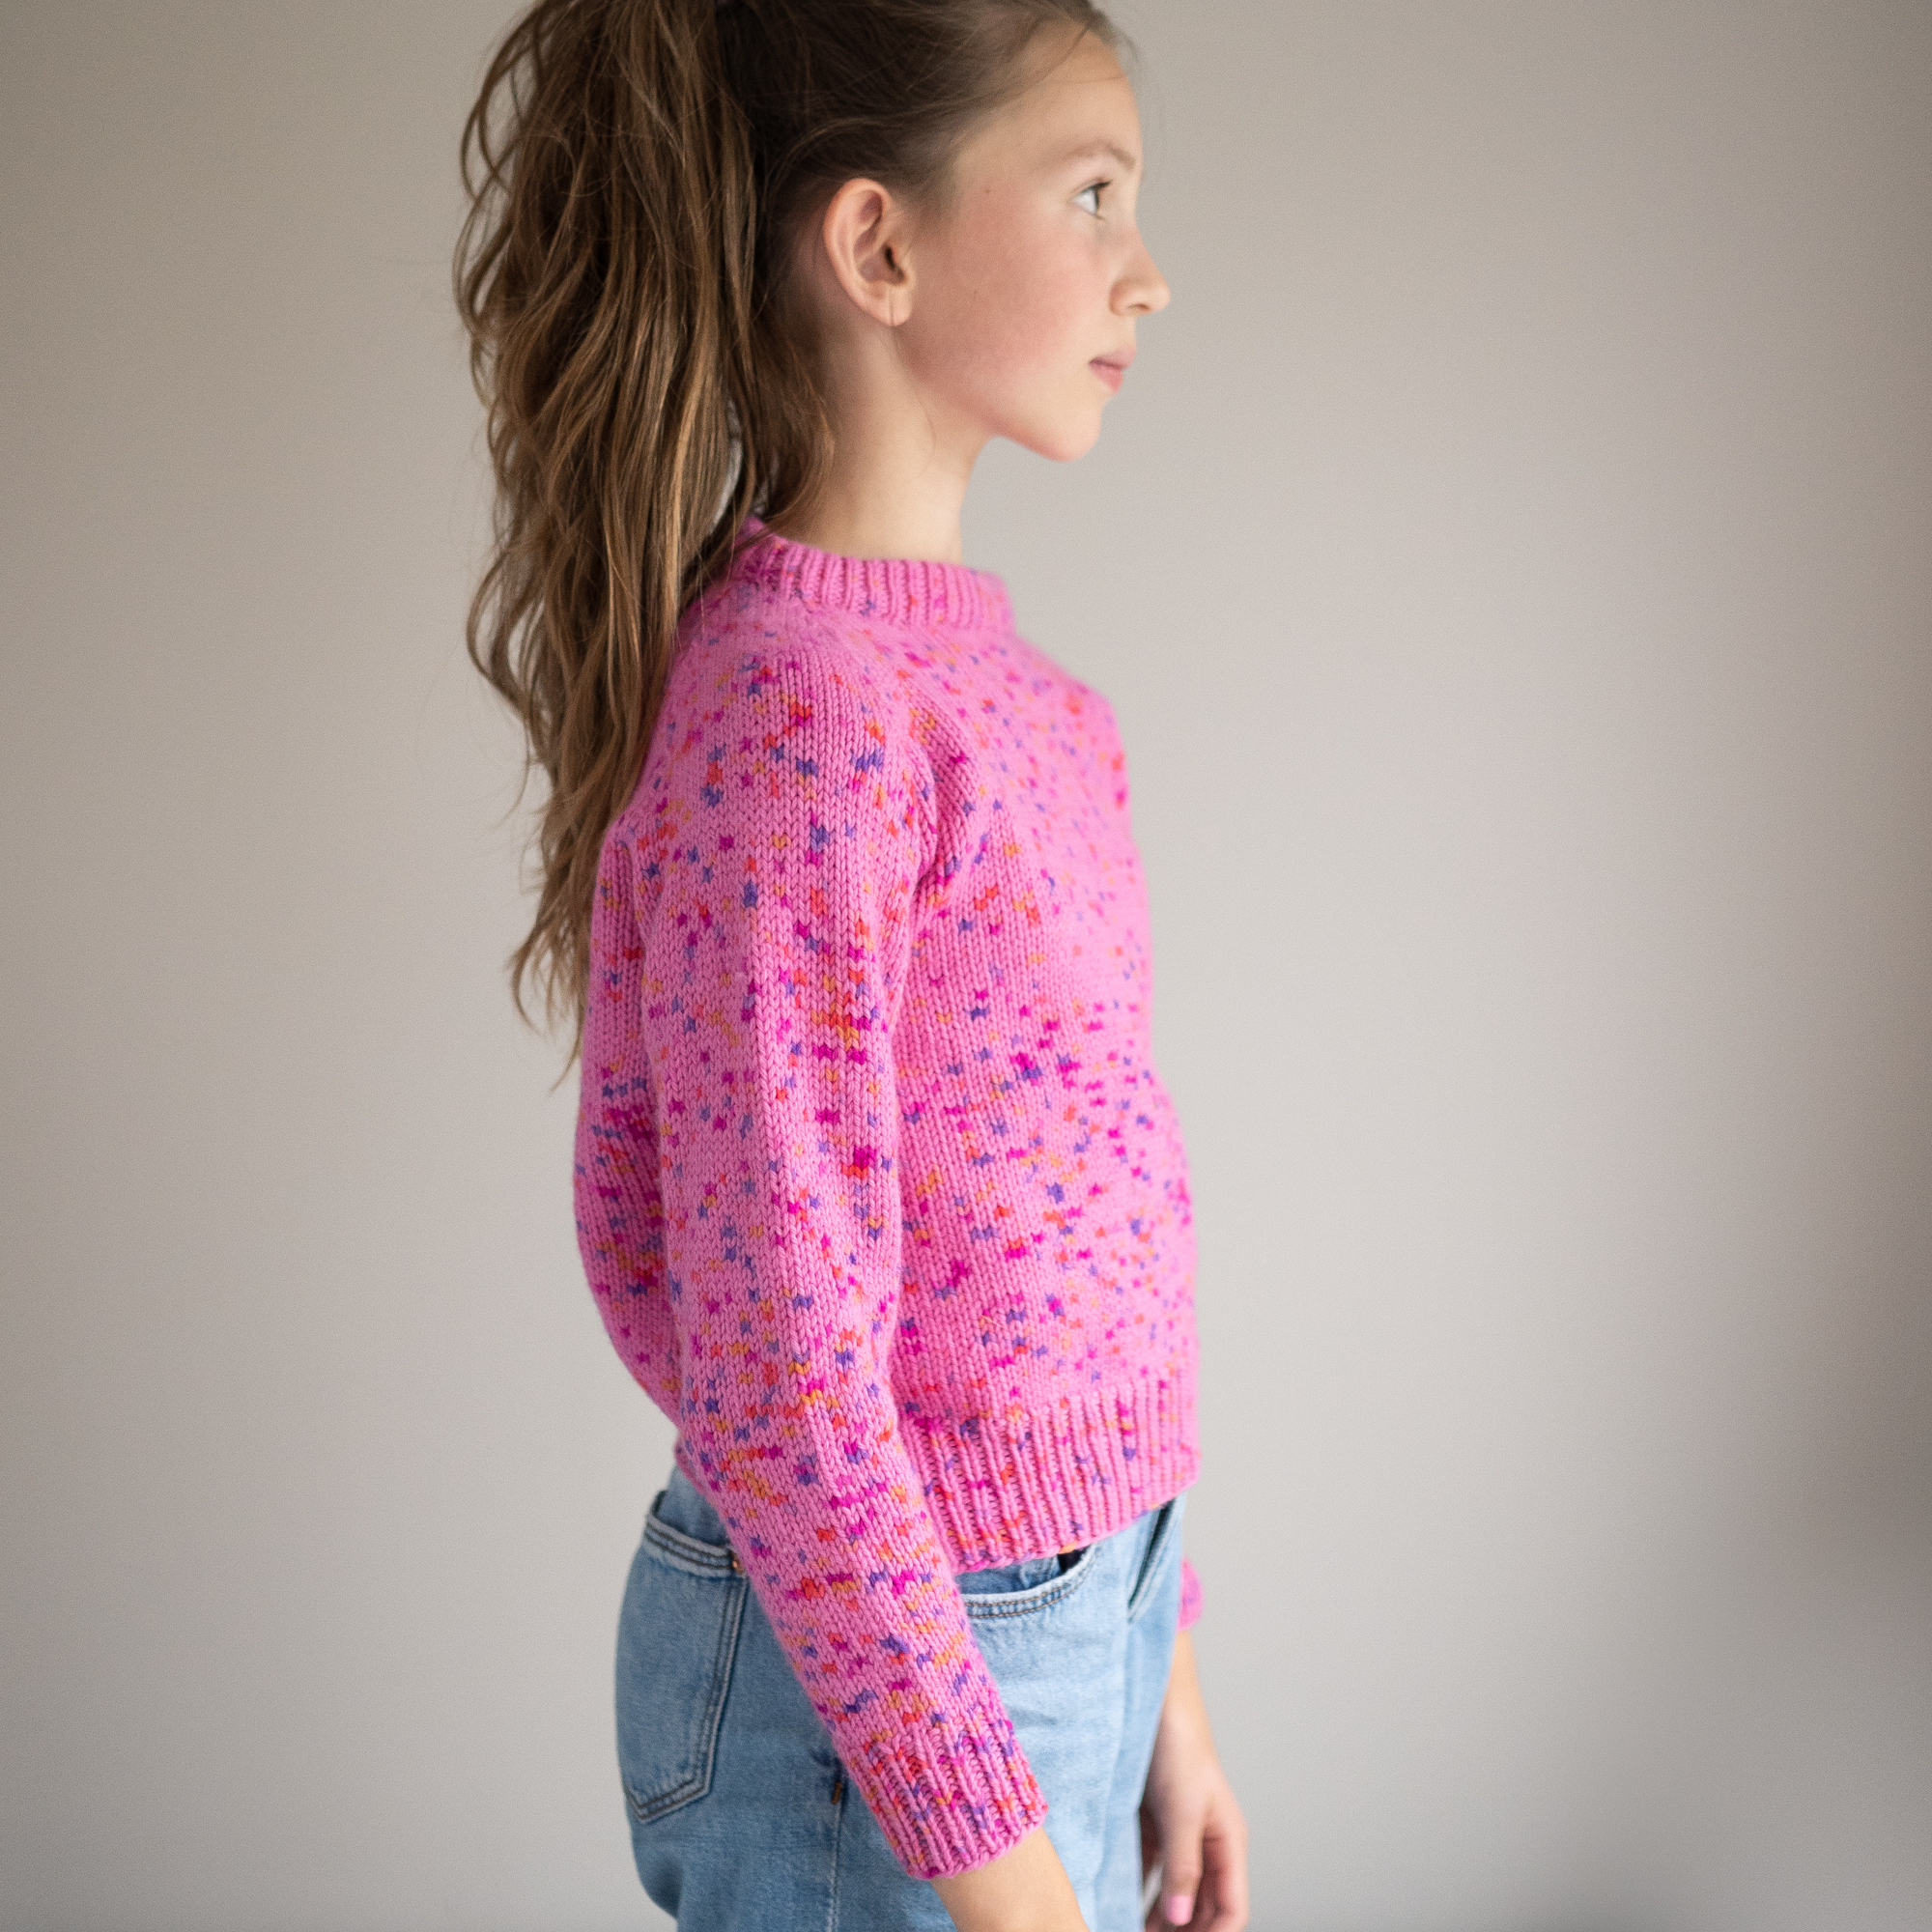  - Slush sweater | Raglan sweater kids | Knitting pattern - by HipKnitShop - 24/07/2021